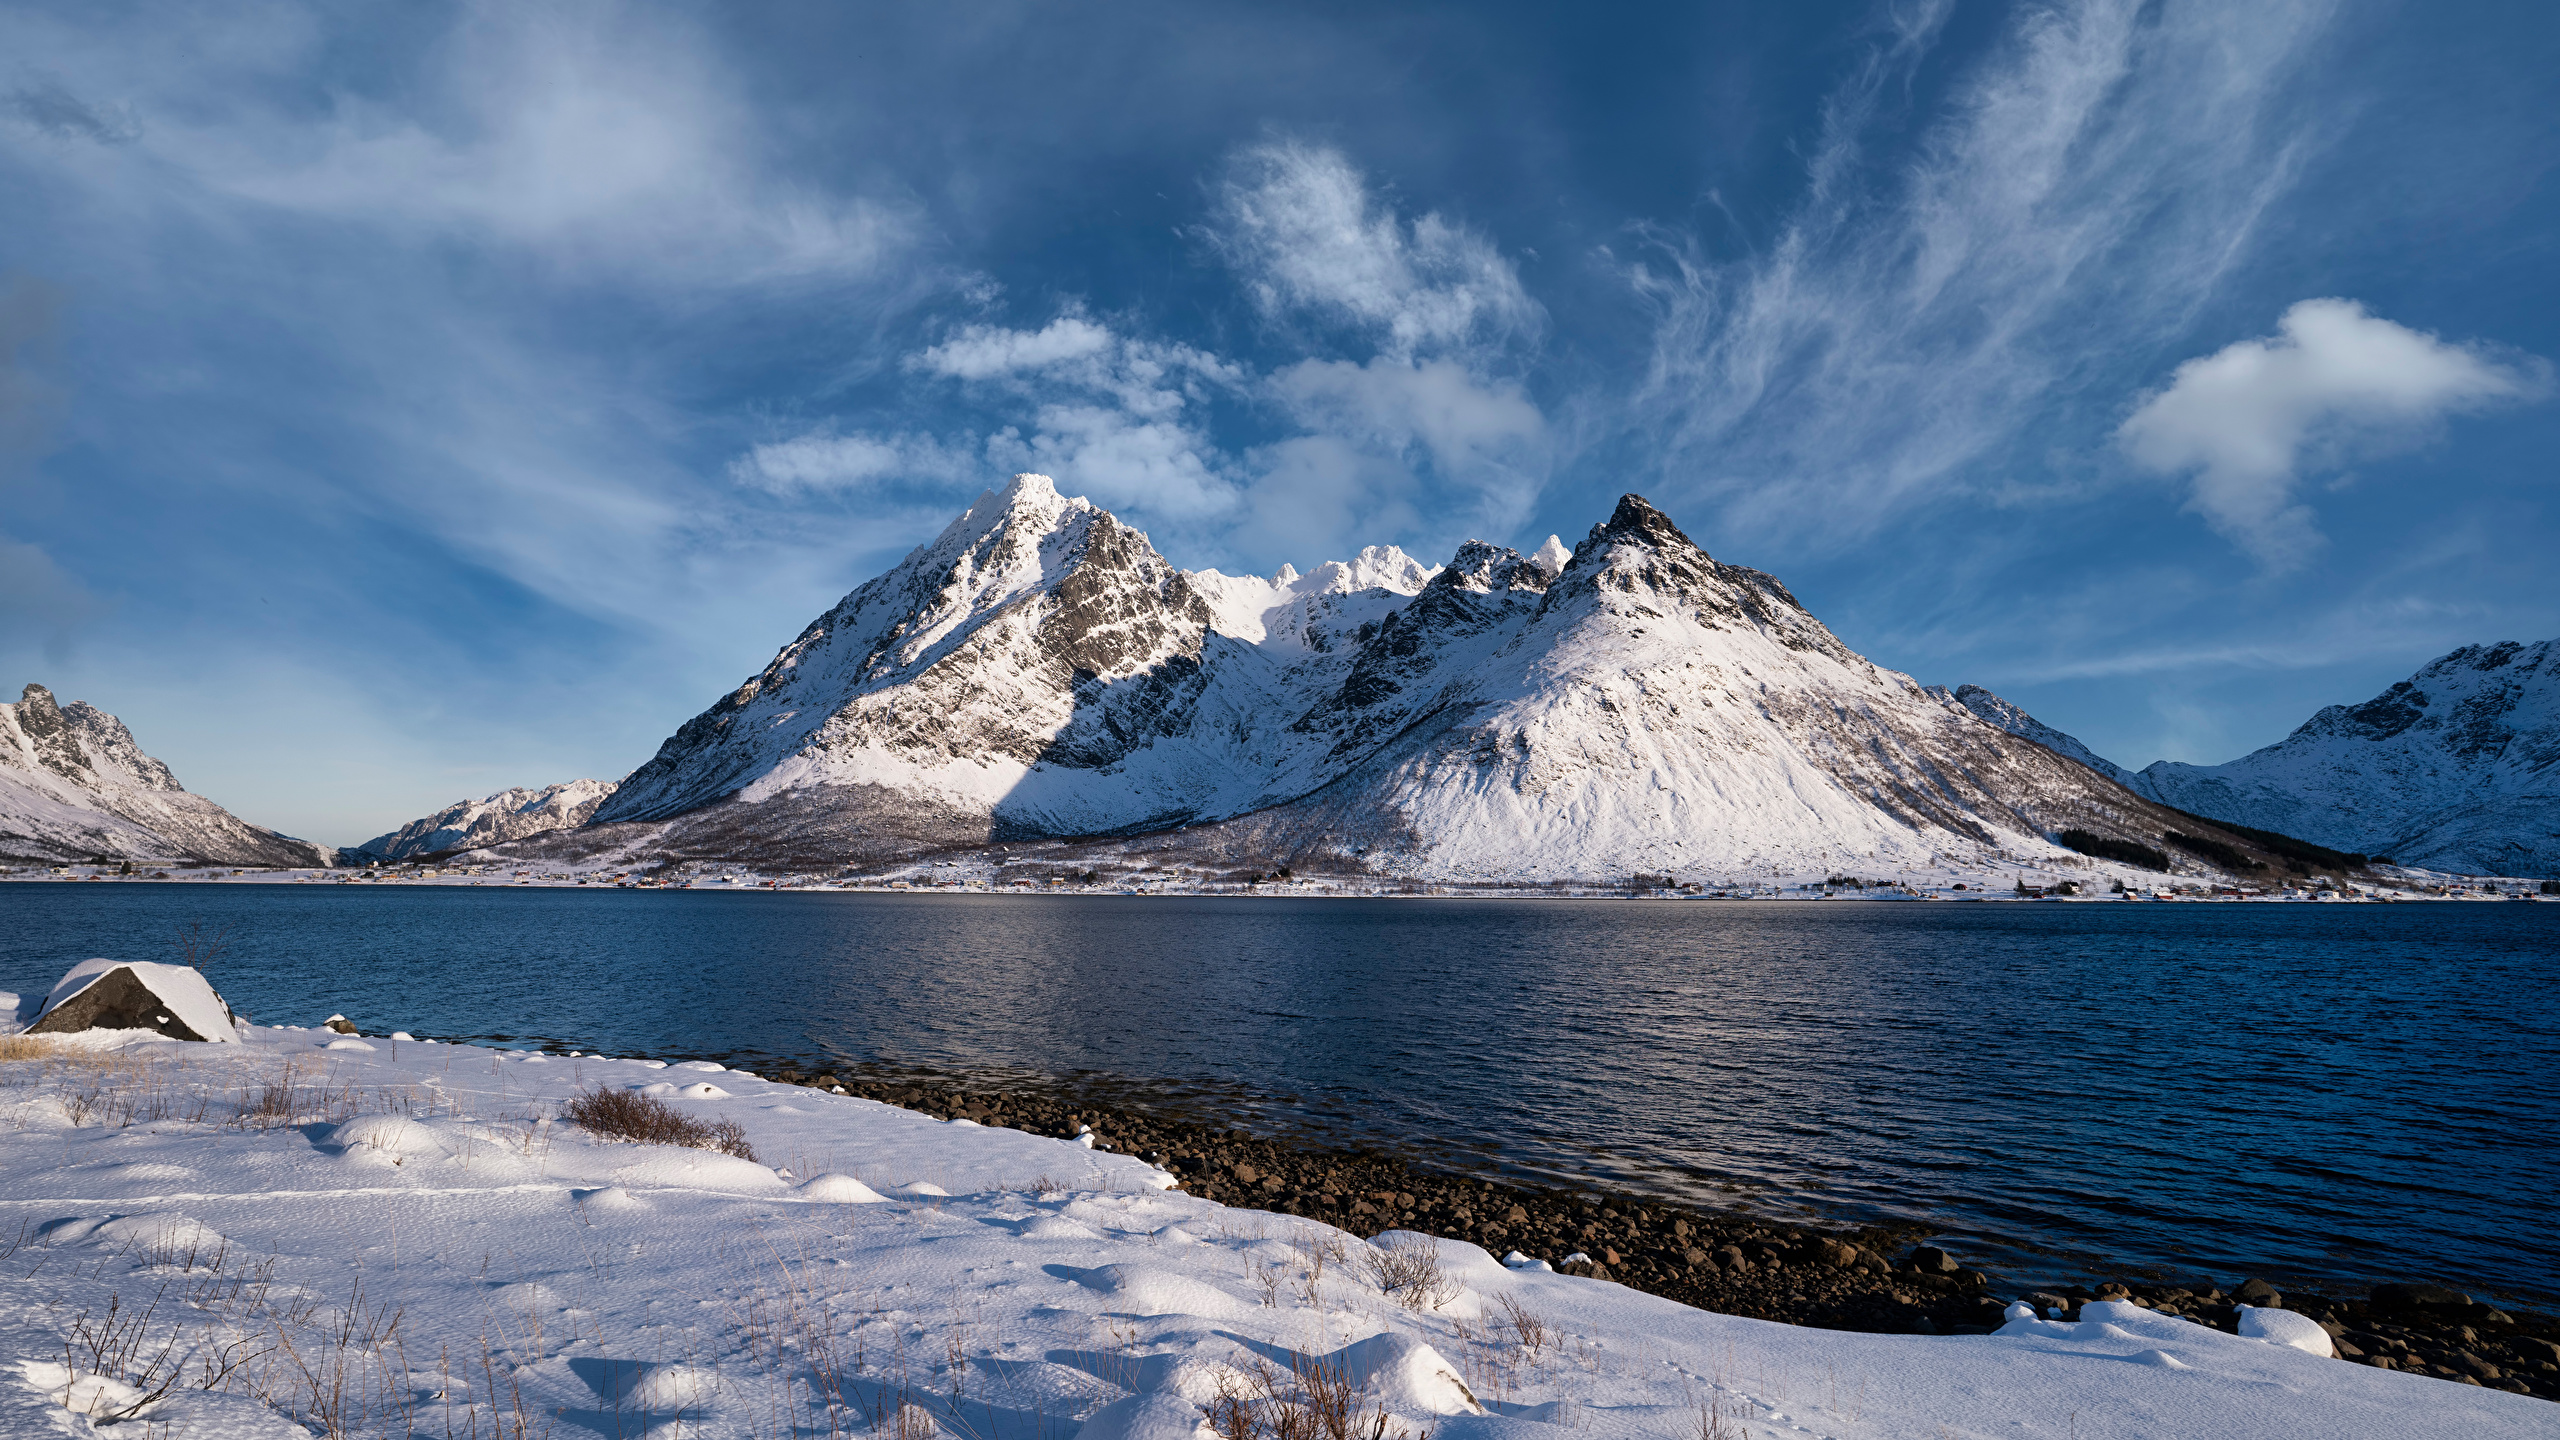 Обои для рабочего стола Лофотенские острова Норвегия Higravstinden Горы Природа Облака 2560x1440 гора облако облачно